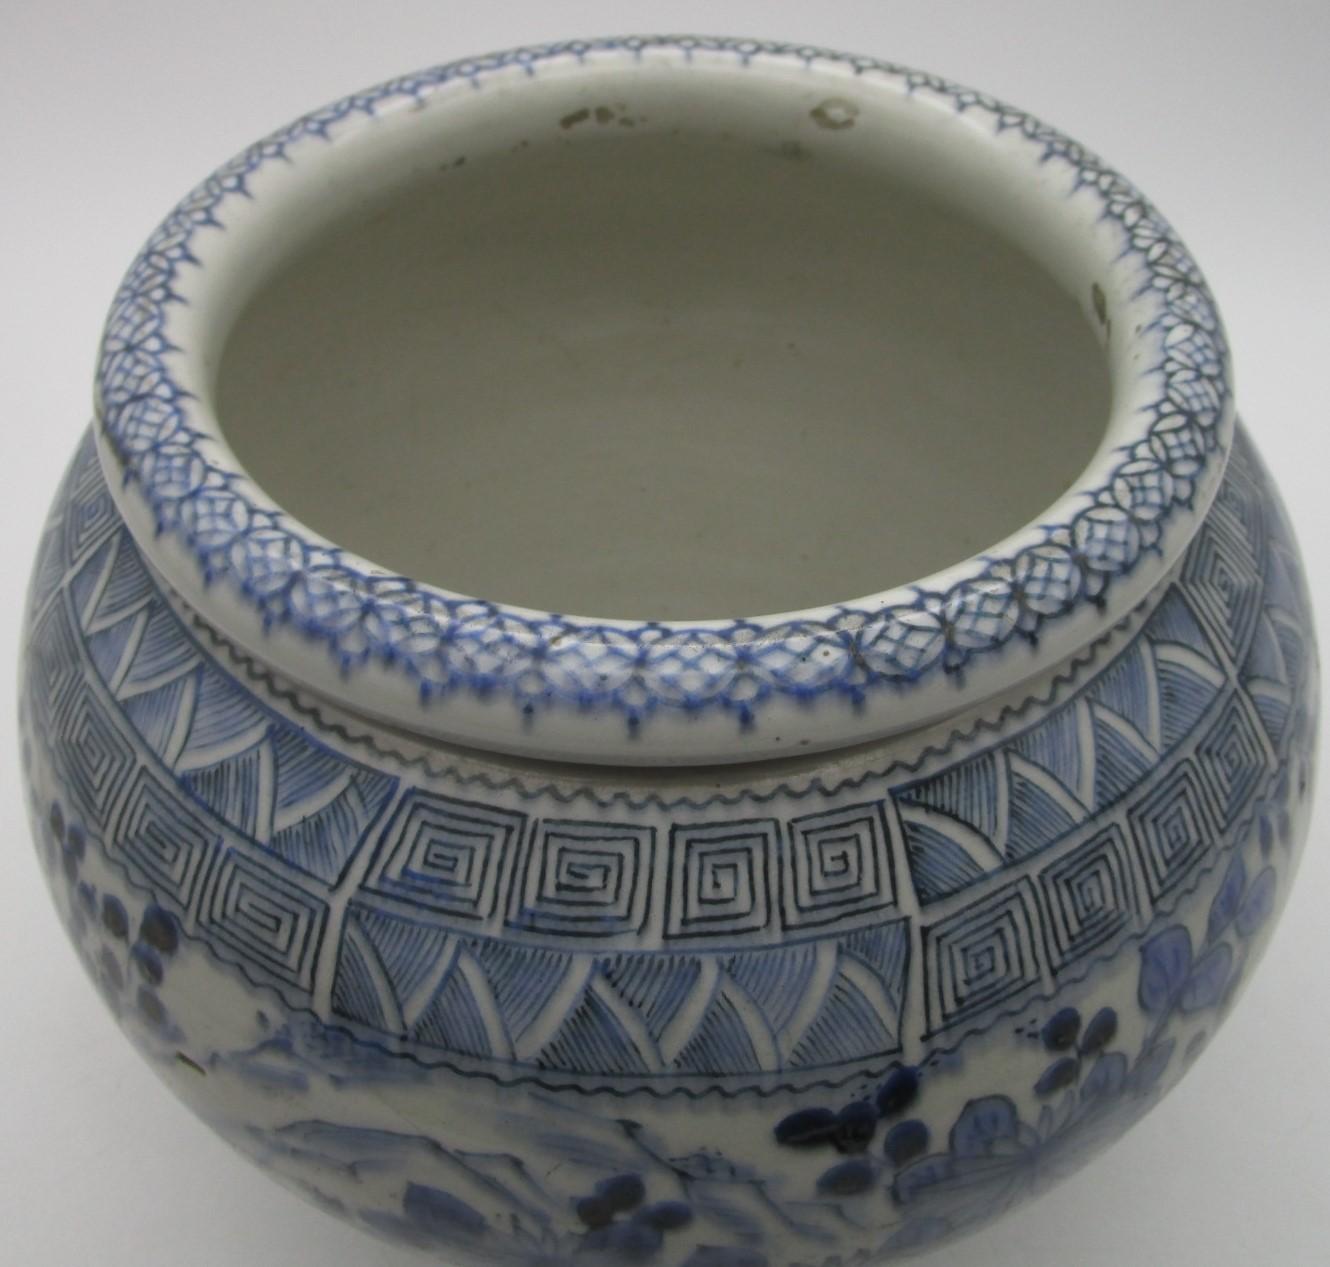 Japanische Vintage-Vase aus Arita-Porzellan mit blauer Unterglasurmalerei aus der Showa-Periode (1926-1989). Die Vase hat eine atemberaubende Form und zeigt Chrysanthemen, die den Korpus verzieren, im angenehmen Kontrast zu den komplizierten und